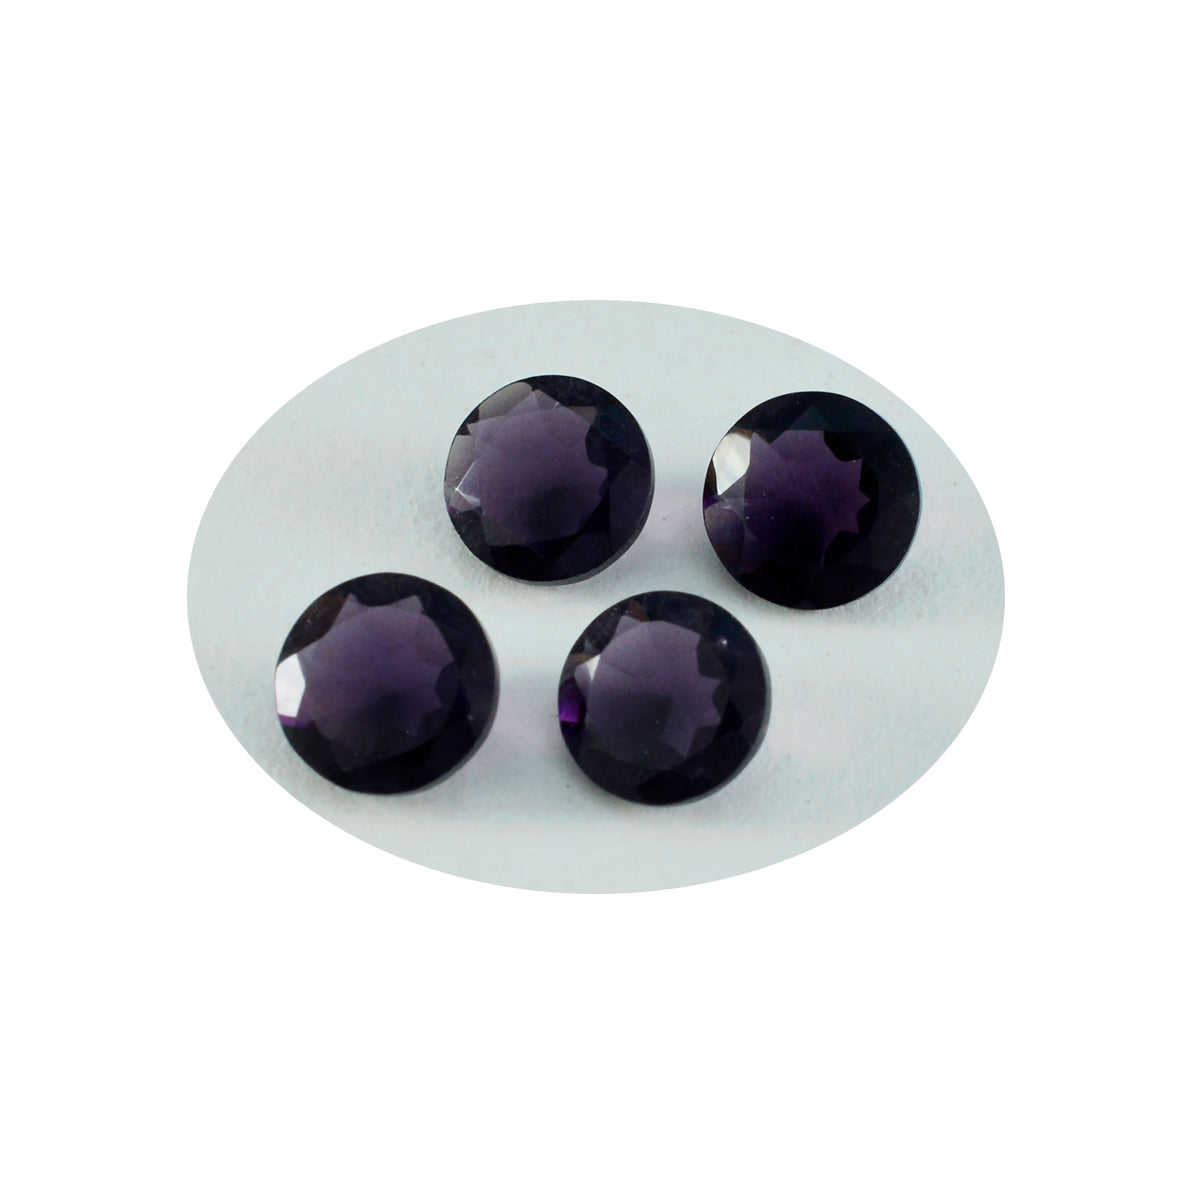 Riyogems 1 pièce améthyste violette cz à facettes 14x14mm forme ronde belle qualité gemme en vrac